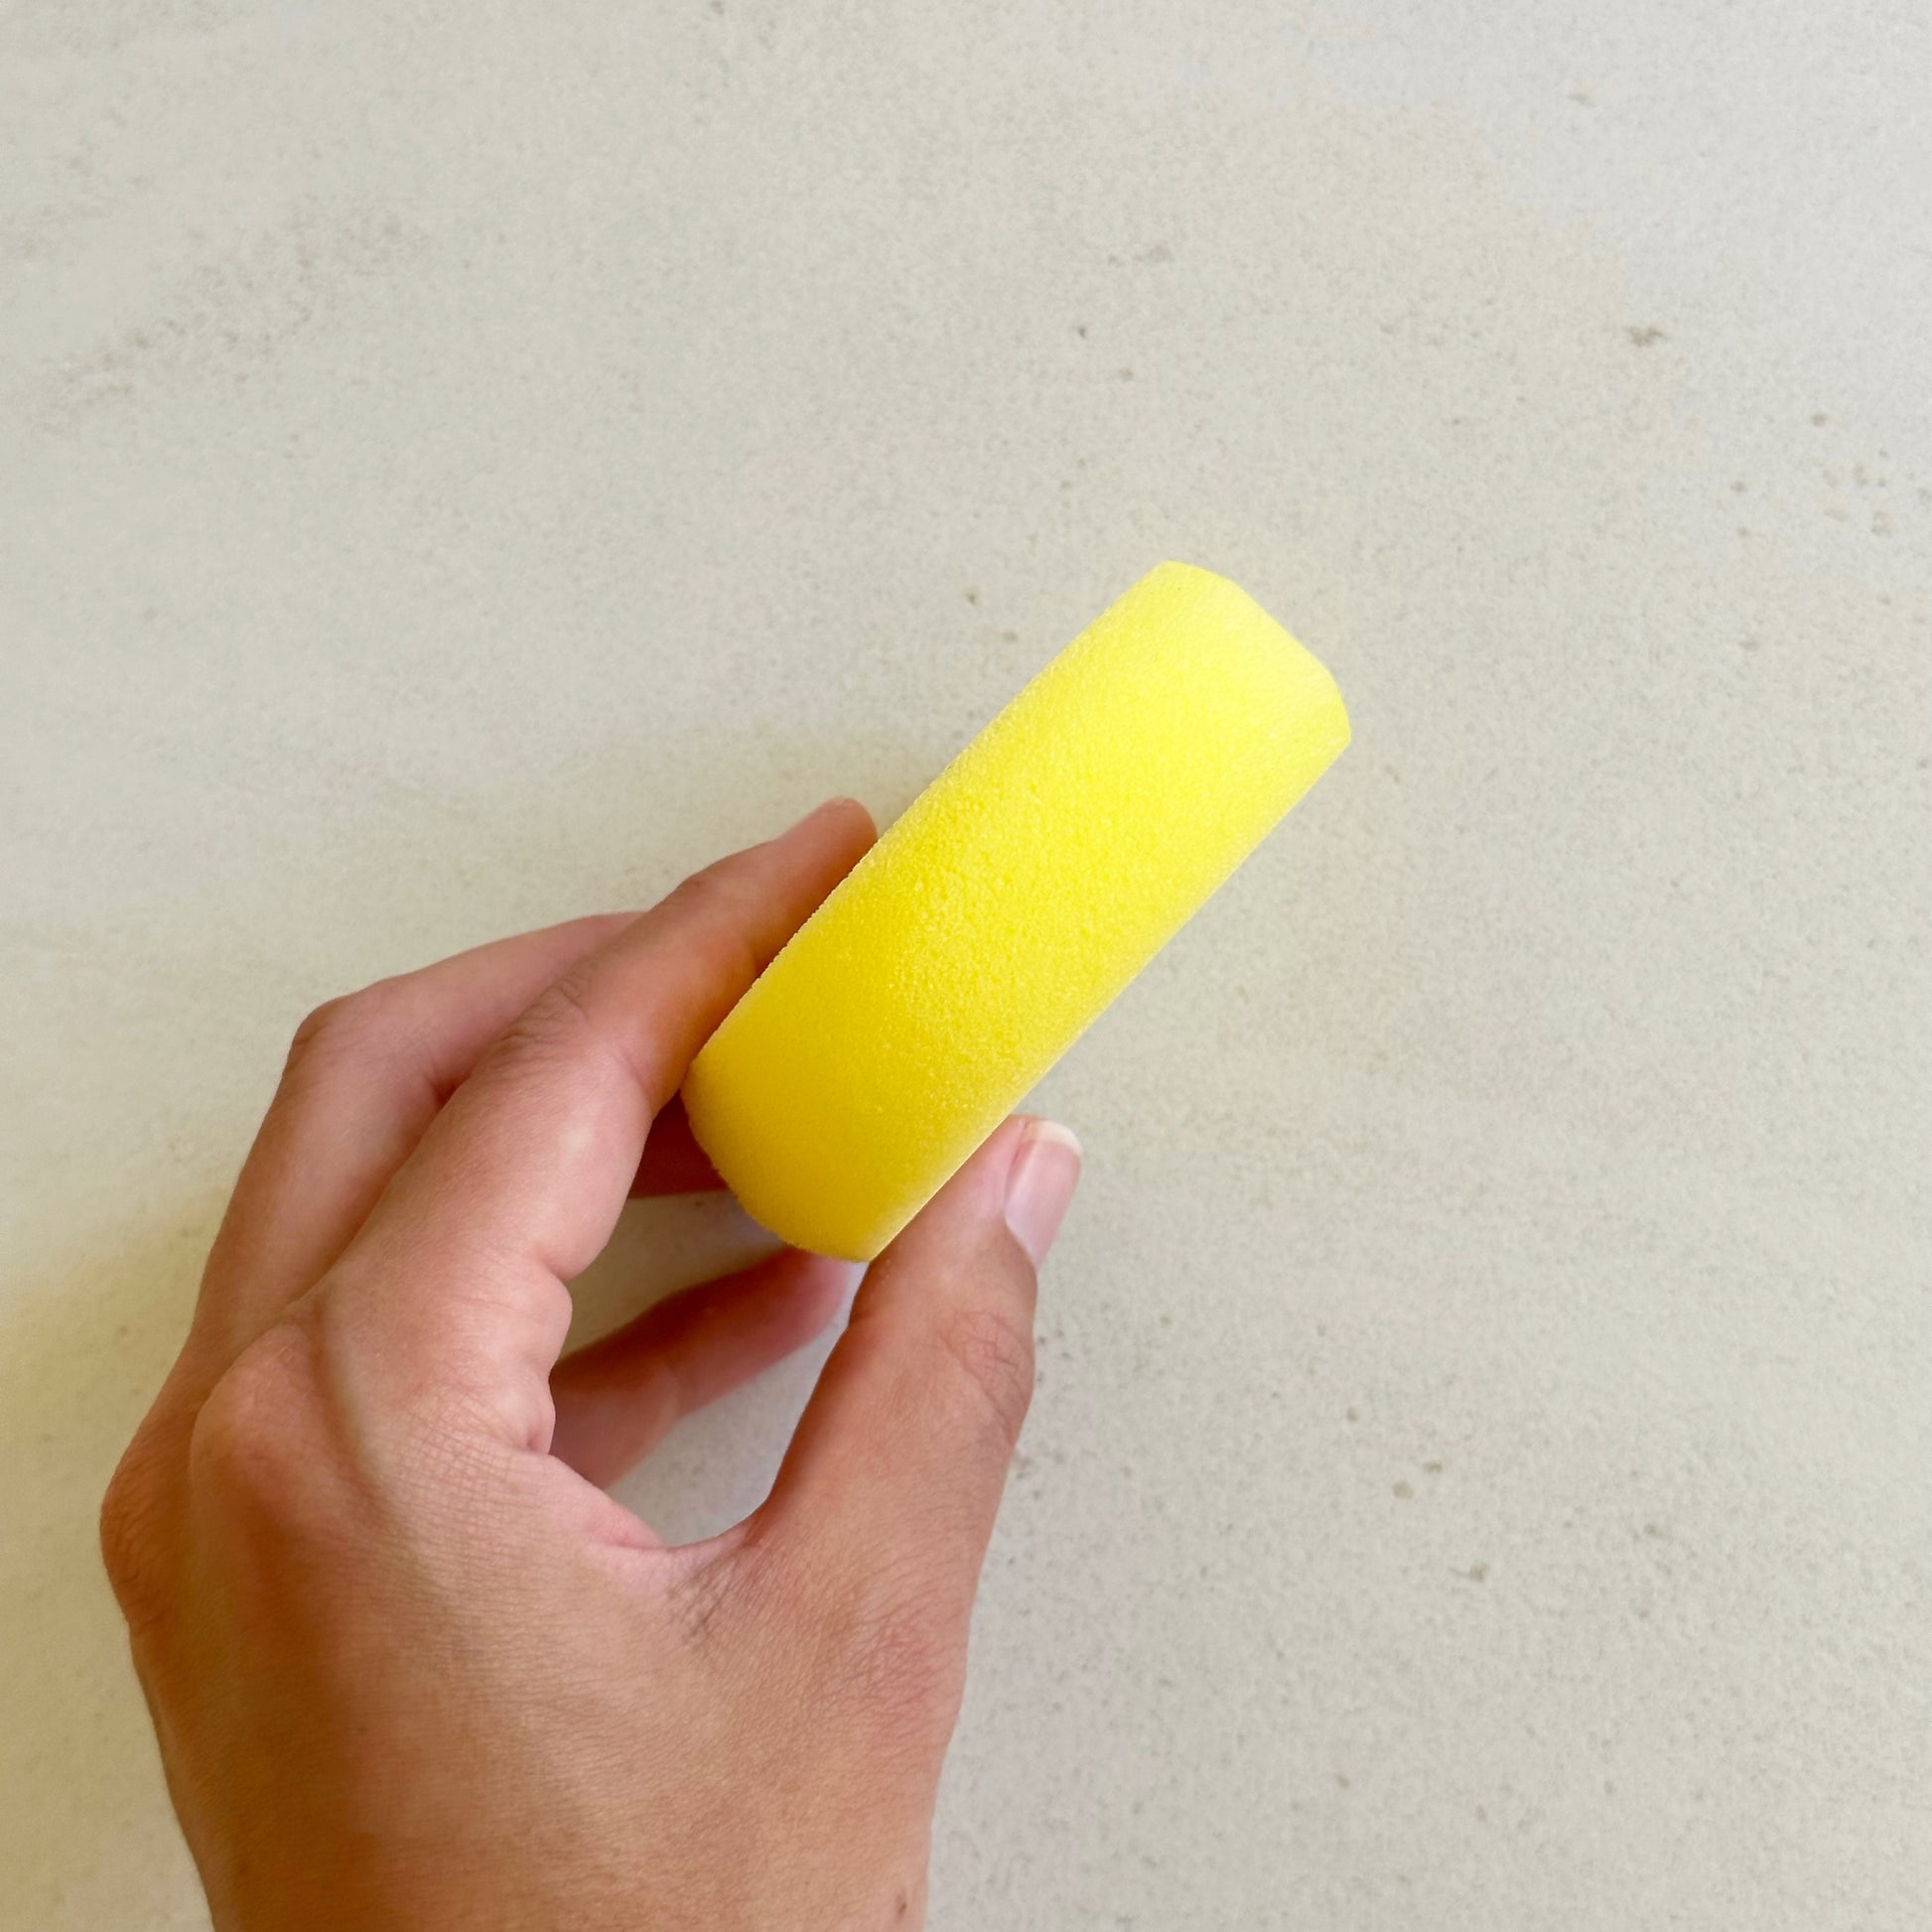 Round Synthetic Sponge